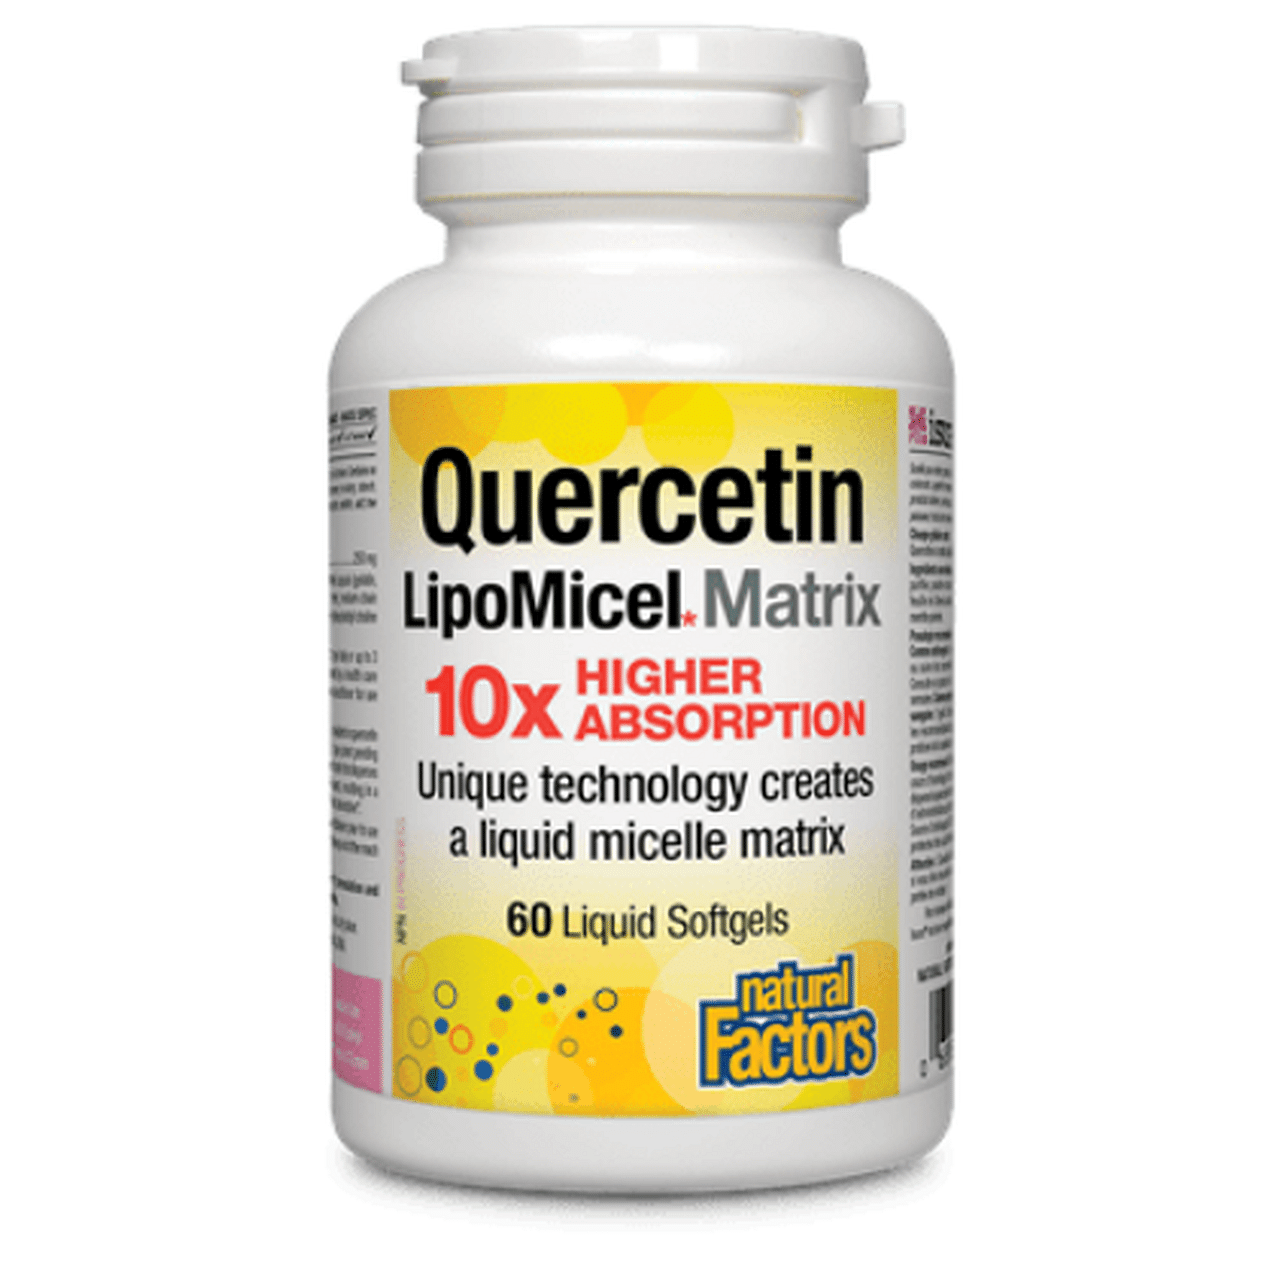 Natural Factors Quercetin LipoMicel Matrix 60 Liquid Softgels